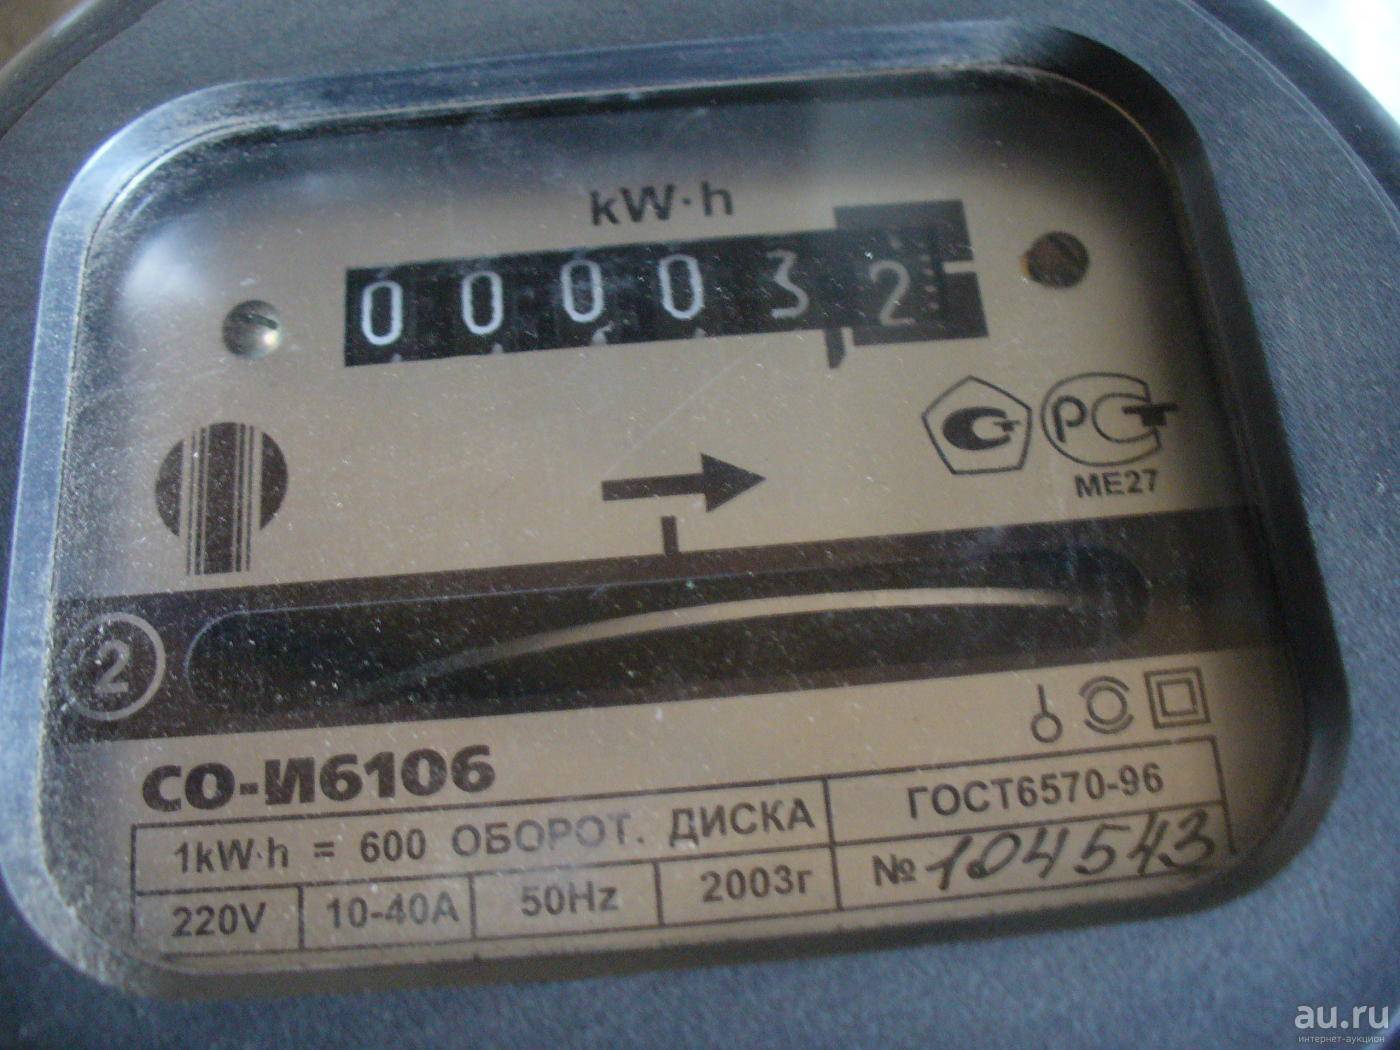 Межповерочный интервал электросчетчиков: таблица сроков и периодичности, куда обращаться, порядок и стоимость поверок счетчиков электроэнергии